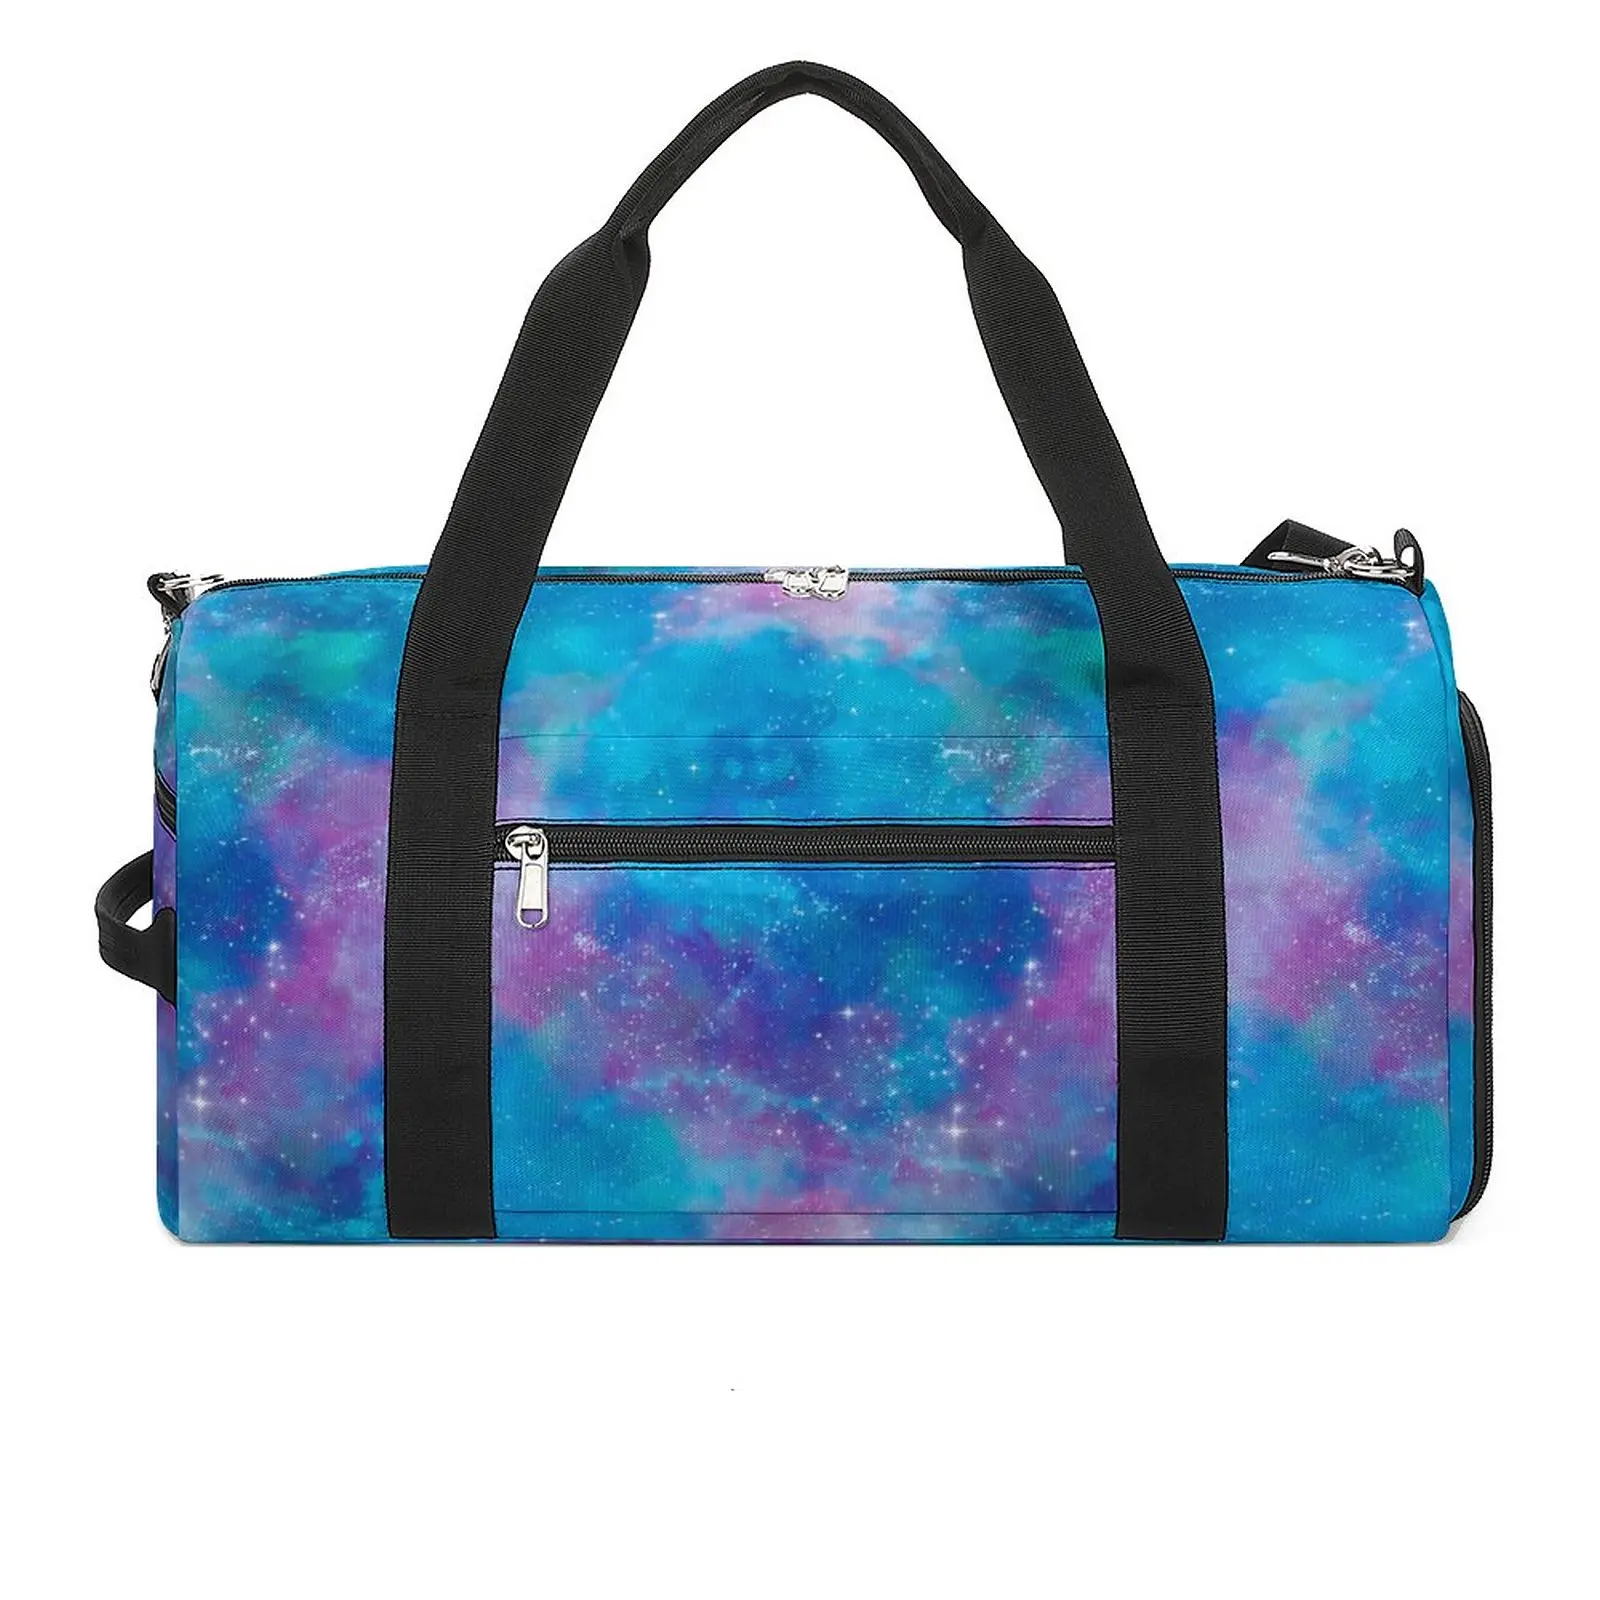 Спортивная сумка с росписью Galaxy, спортивные сумки для тренировок с красочным принтом, мужской женский дизайн, Большая графическая сумка для фитнеса, уличные сумки.